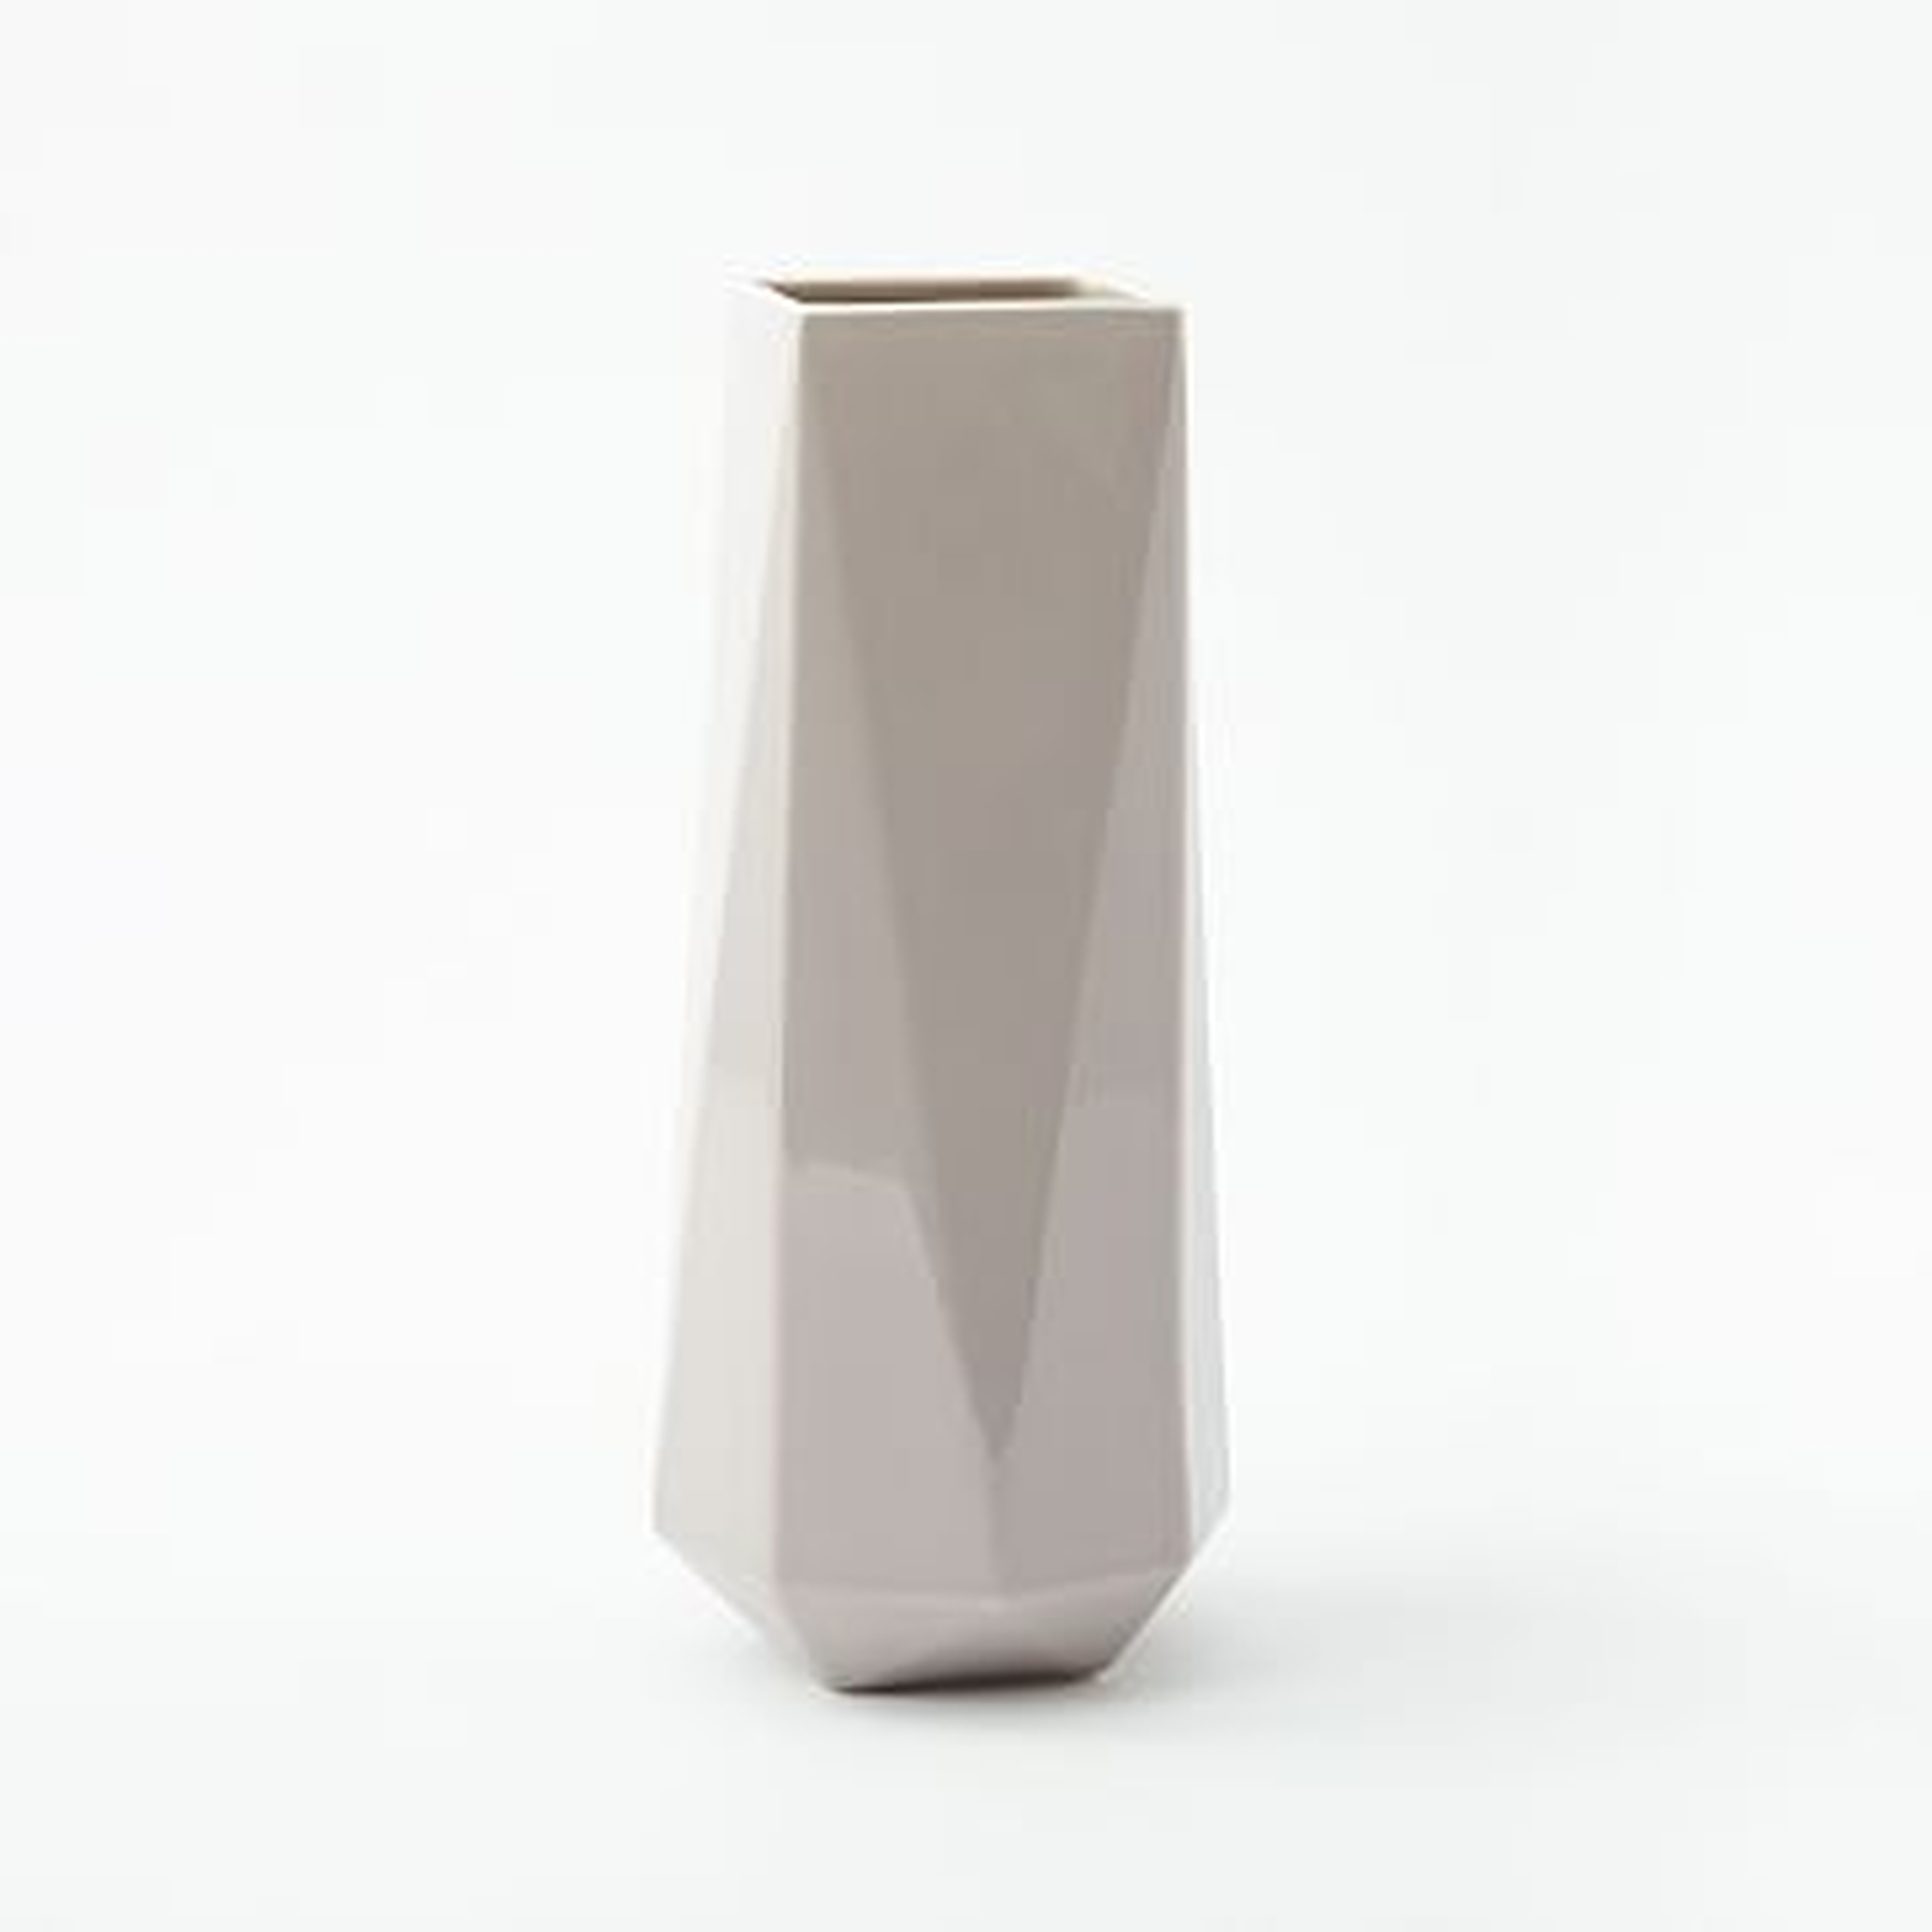 Faceted Porcelain Vase, 12", Dark Grey - West Elm